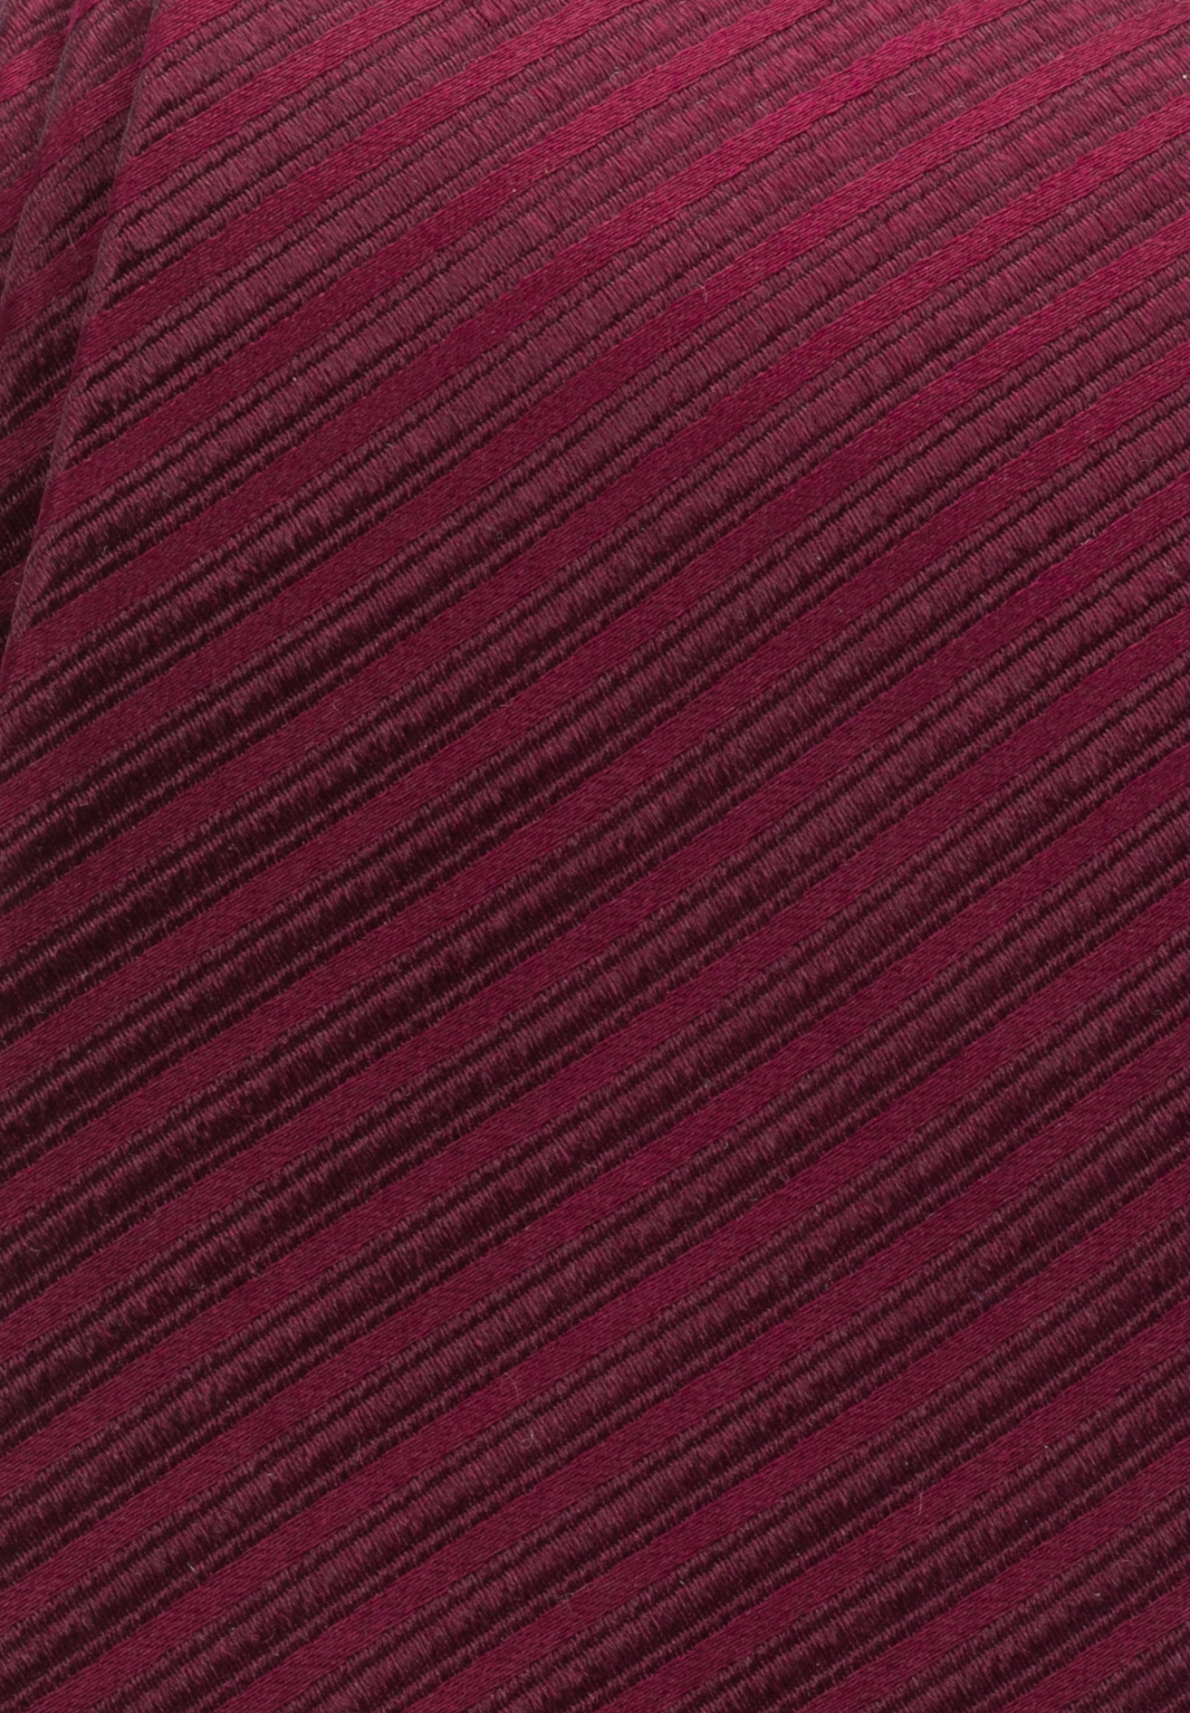 Eterna Krawatte dunkelrot gestreift 9716-57 | SPEZIALIST MODE